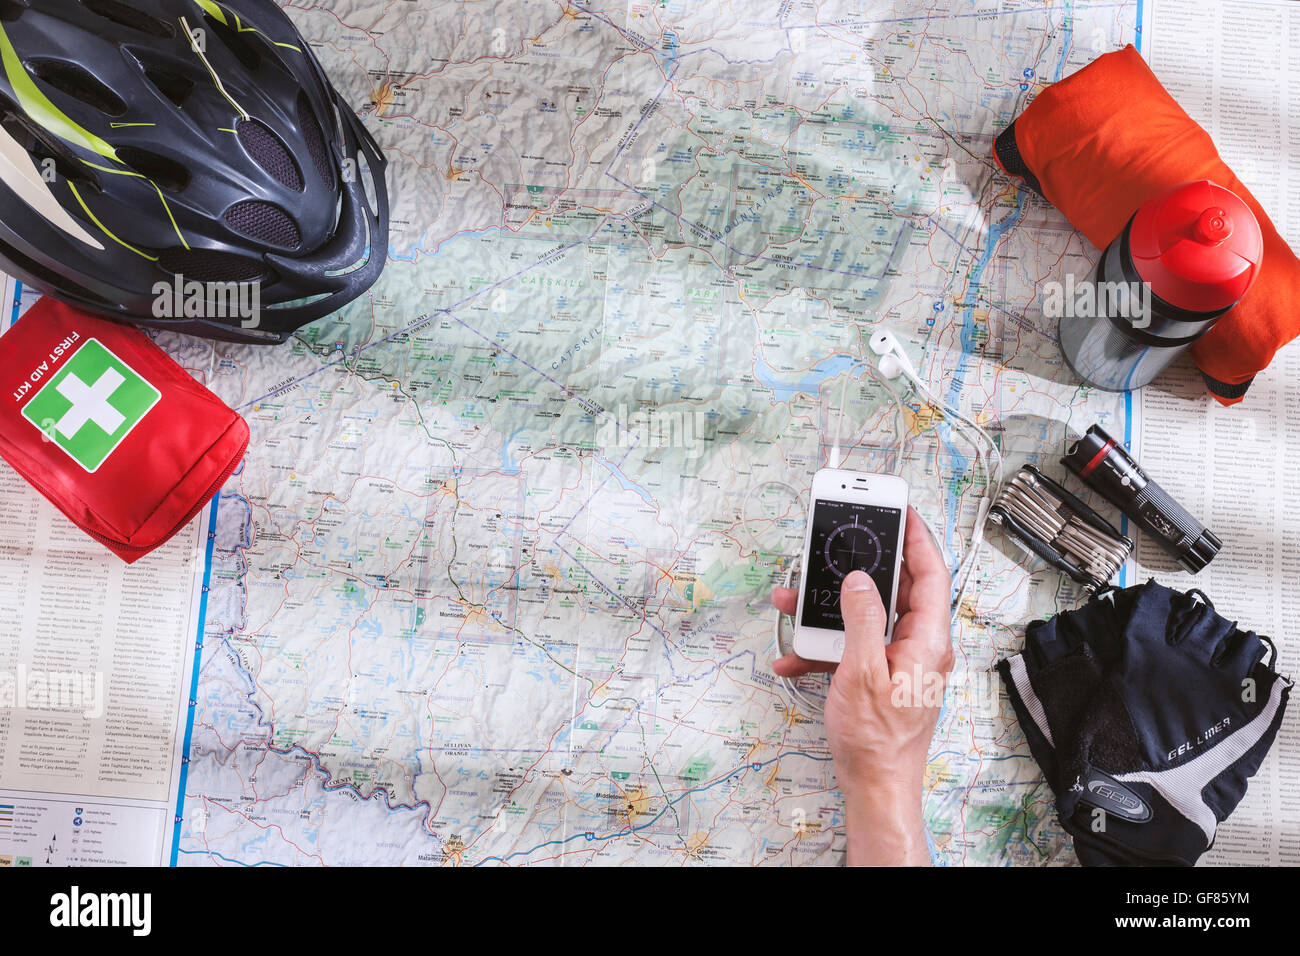 Accessori per biciclette sparsi sulla mappa durante la pianificazione di un viaggio in bicicletta in montagna con app bussola sullo smartphone a portata di mano Foto Stock